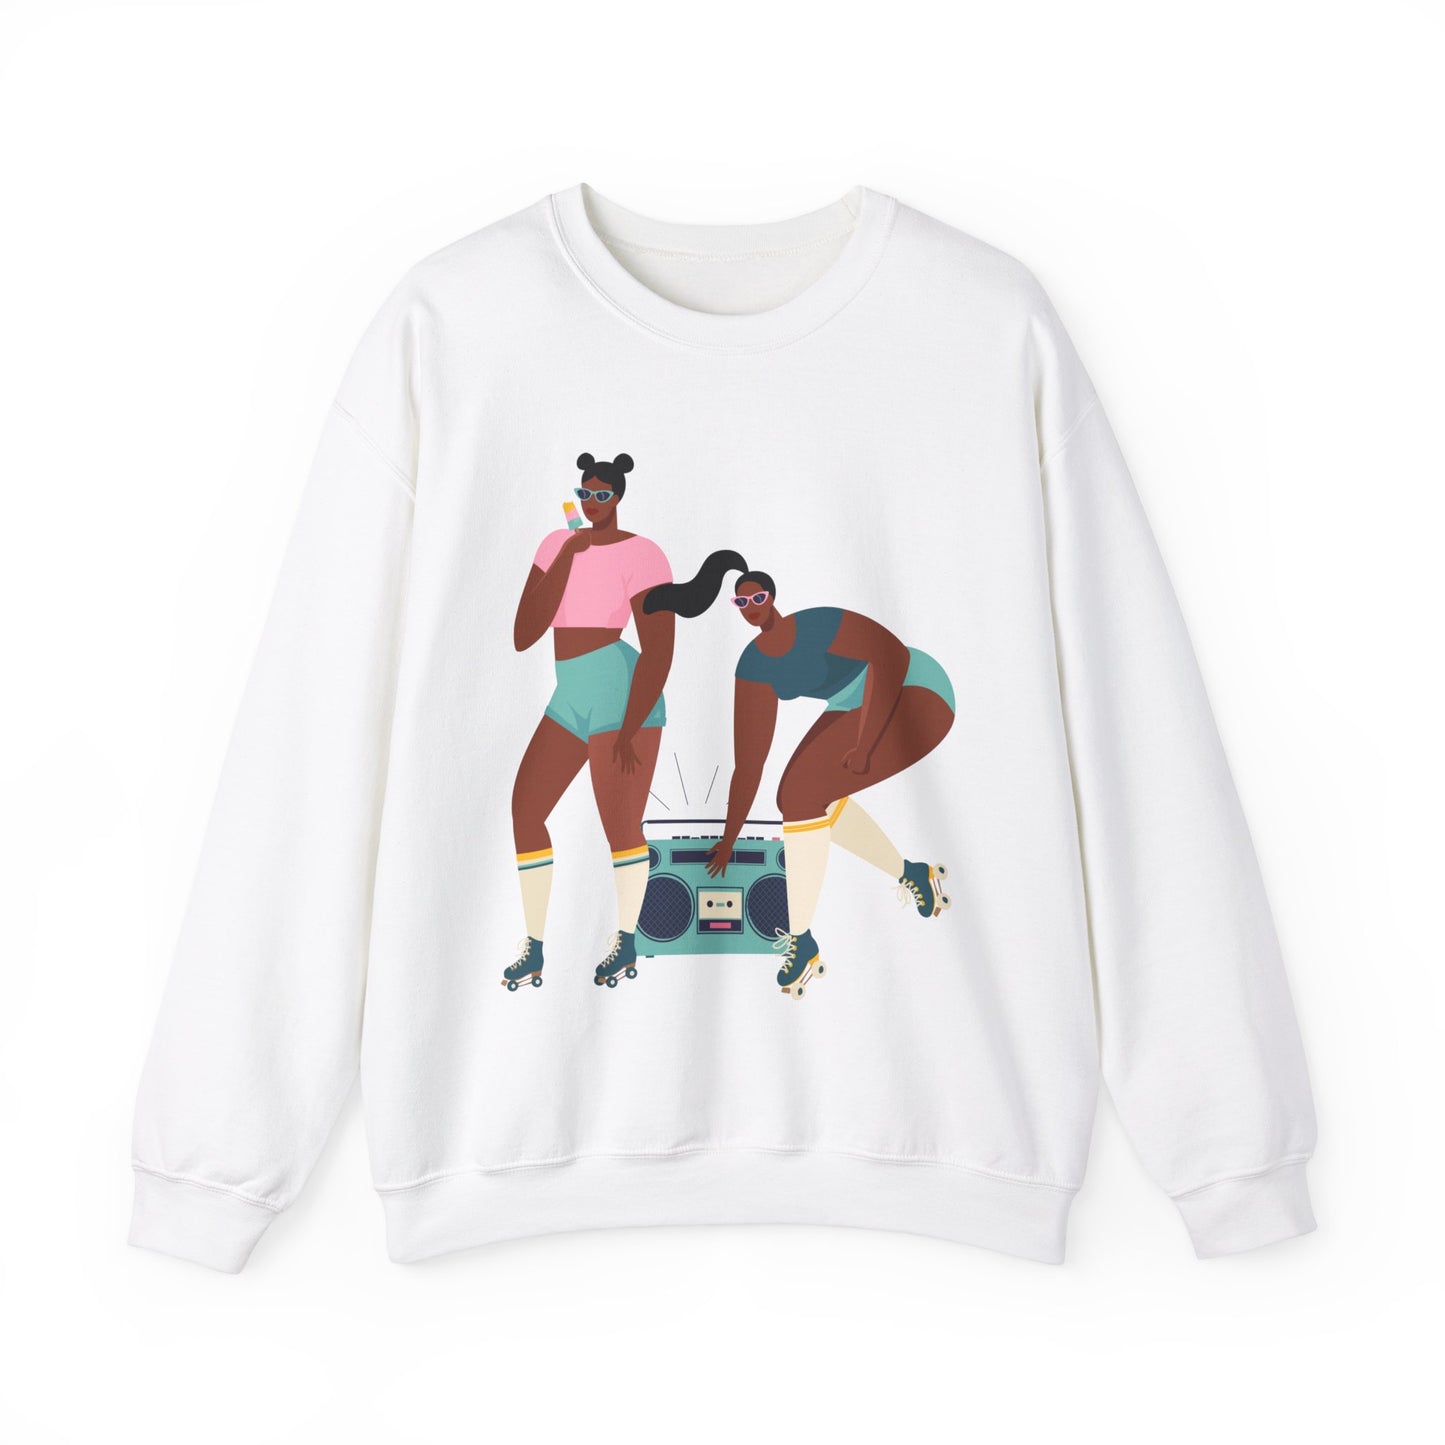 Roller Girls Sweatshirt